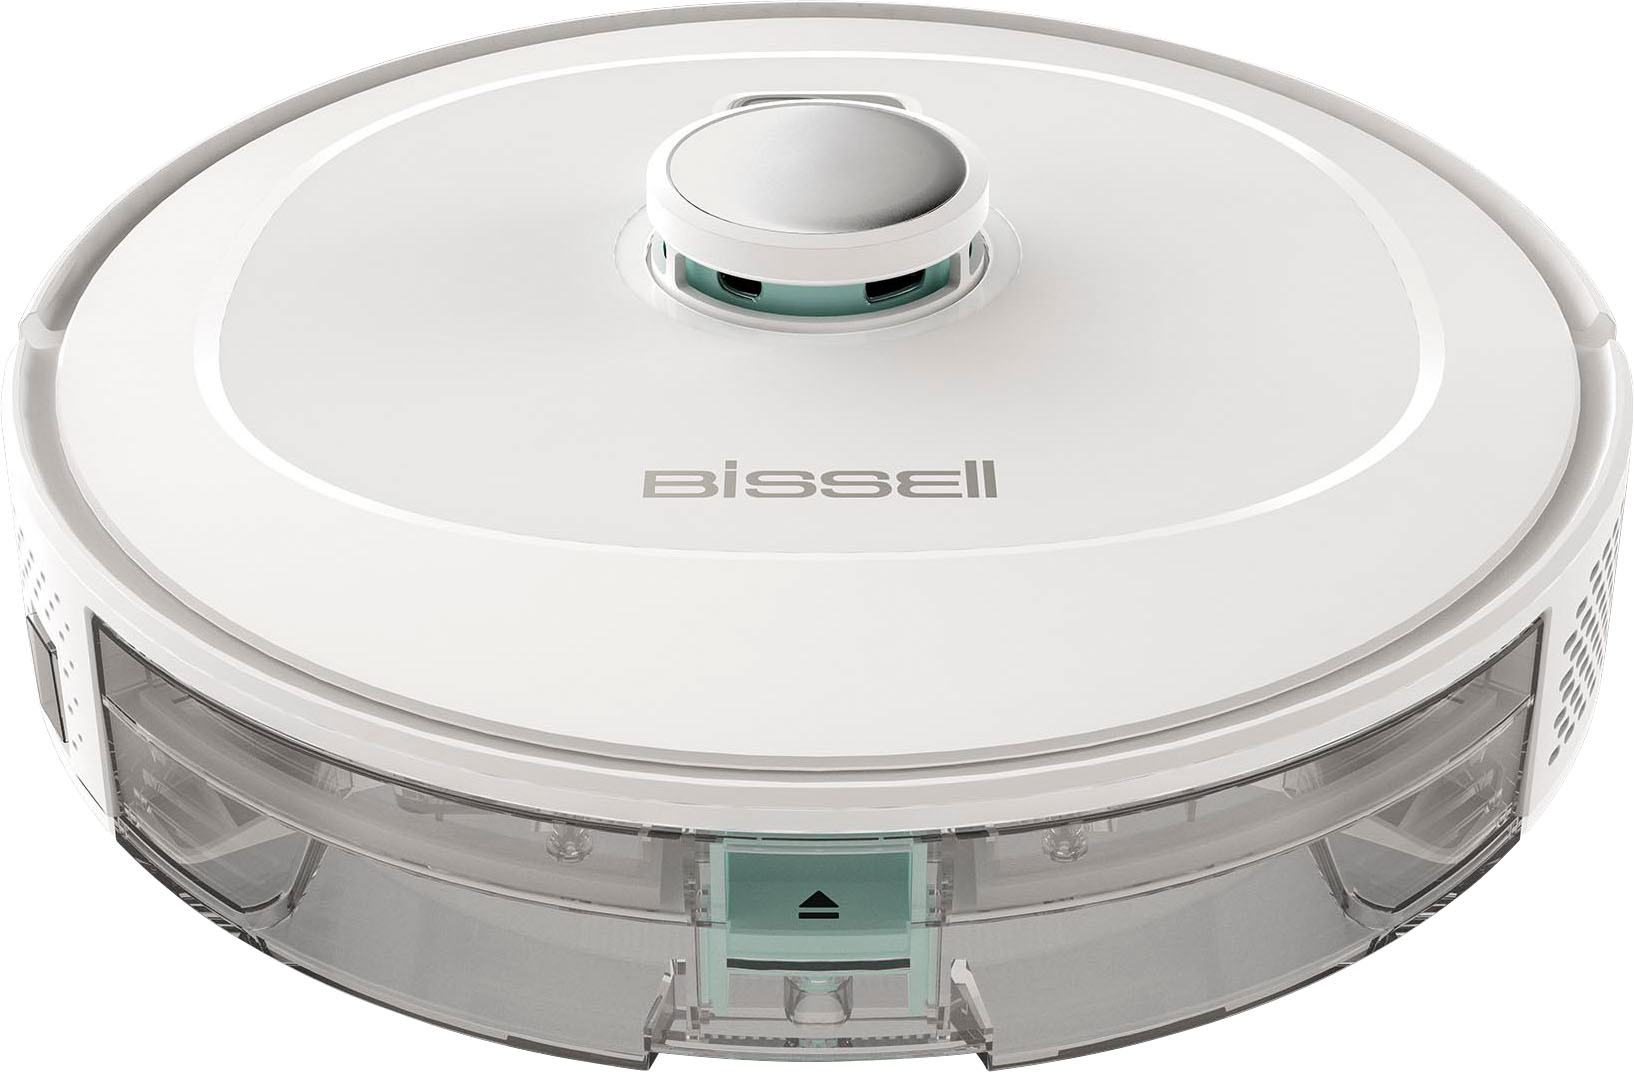 Robot friegasuelos - BISSELL 2931N, 3 W, 0,4 l, 130 min, 52 dB(A), Blanco